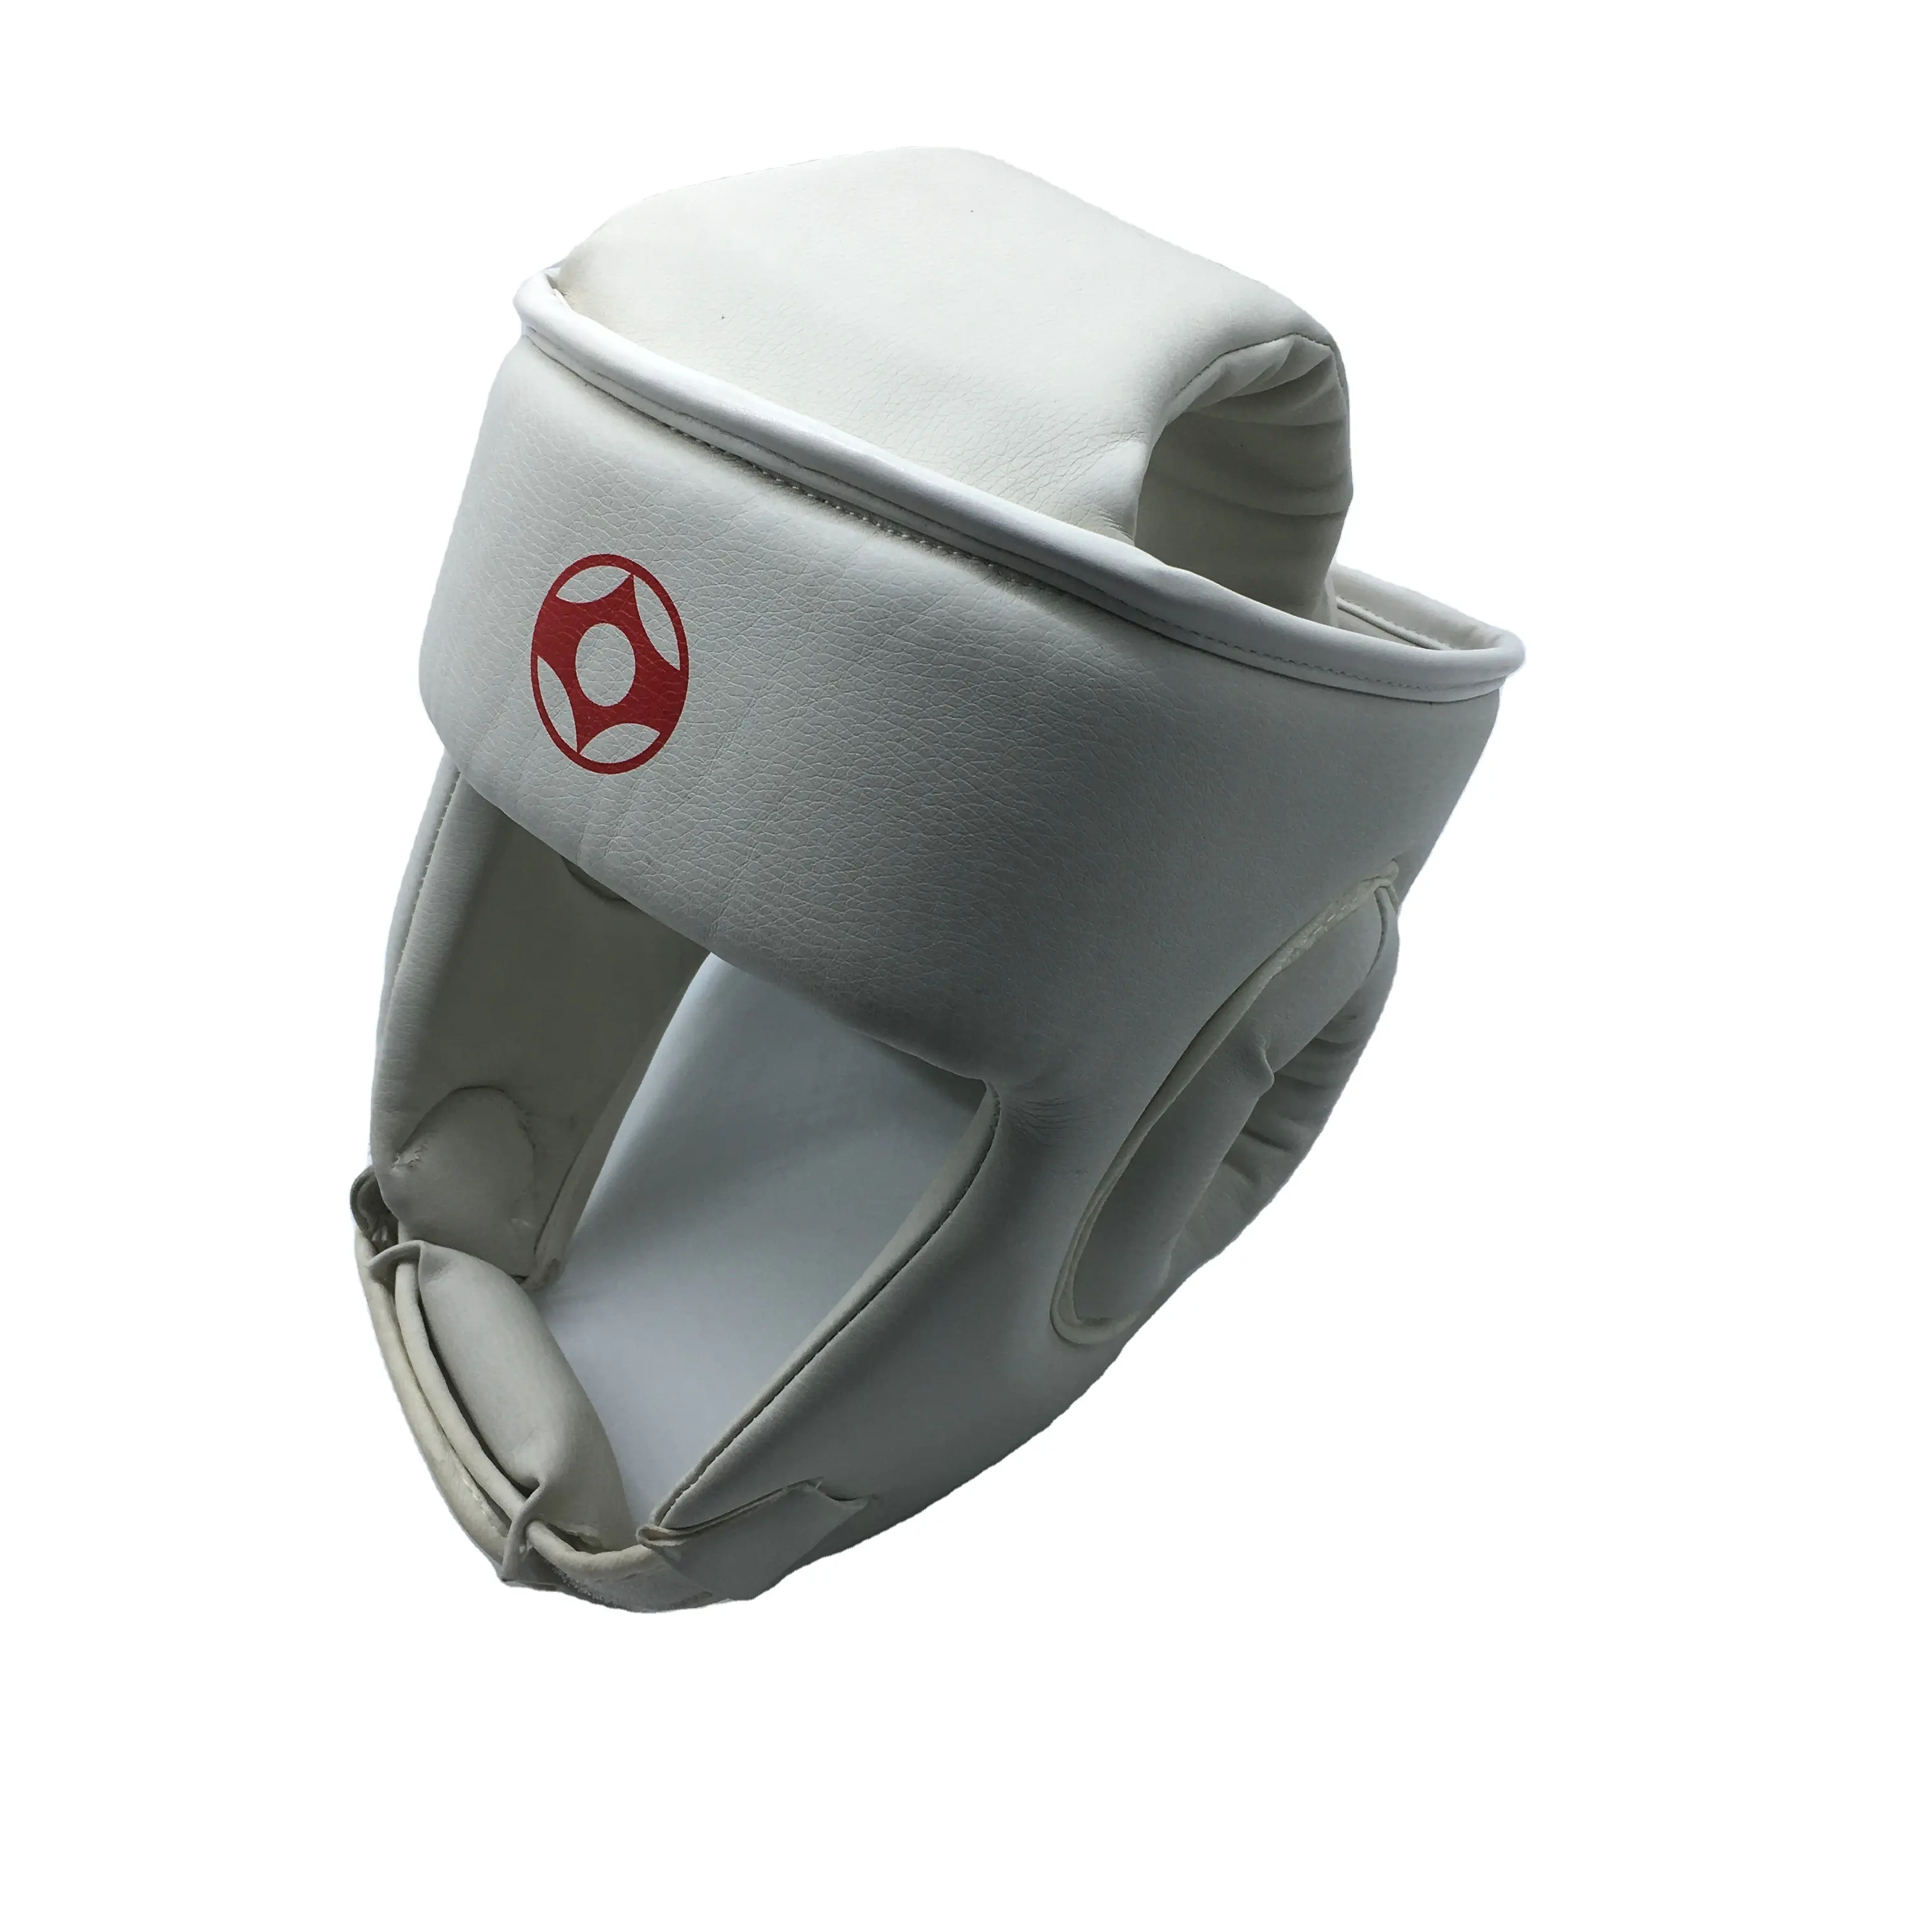 전문 피트니스 Sport Safety Helmet PunchKarate kyokushin 킥 권투 가라테 Head Guard Gear 스파링 Protector